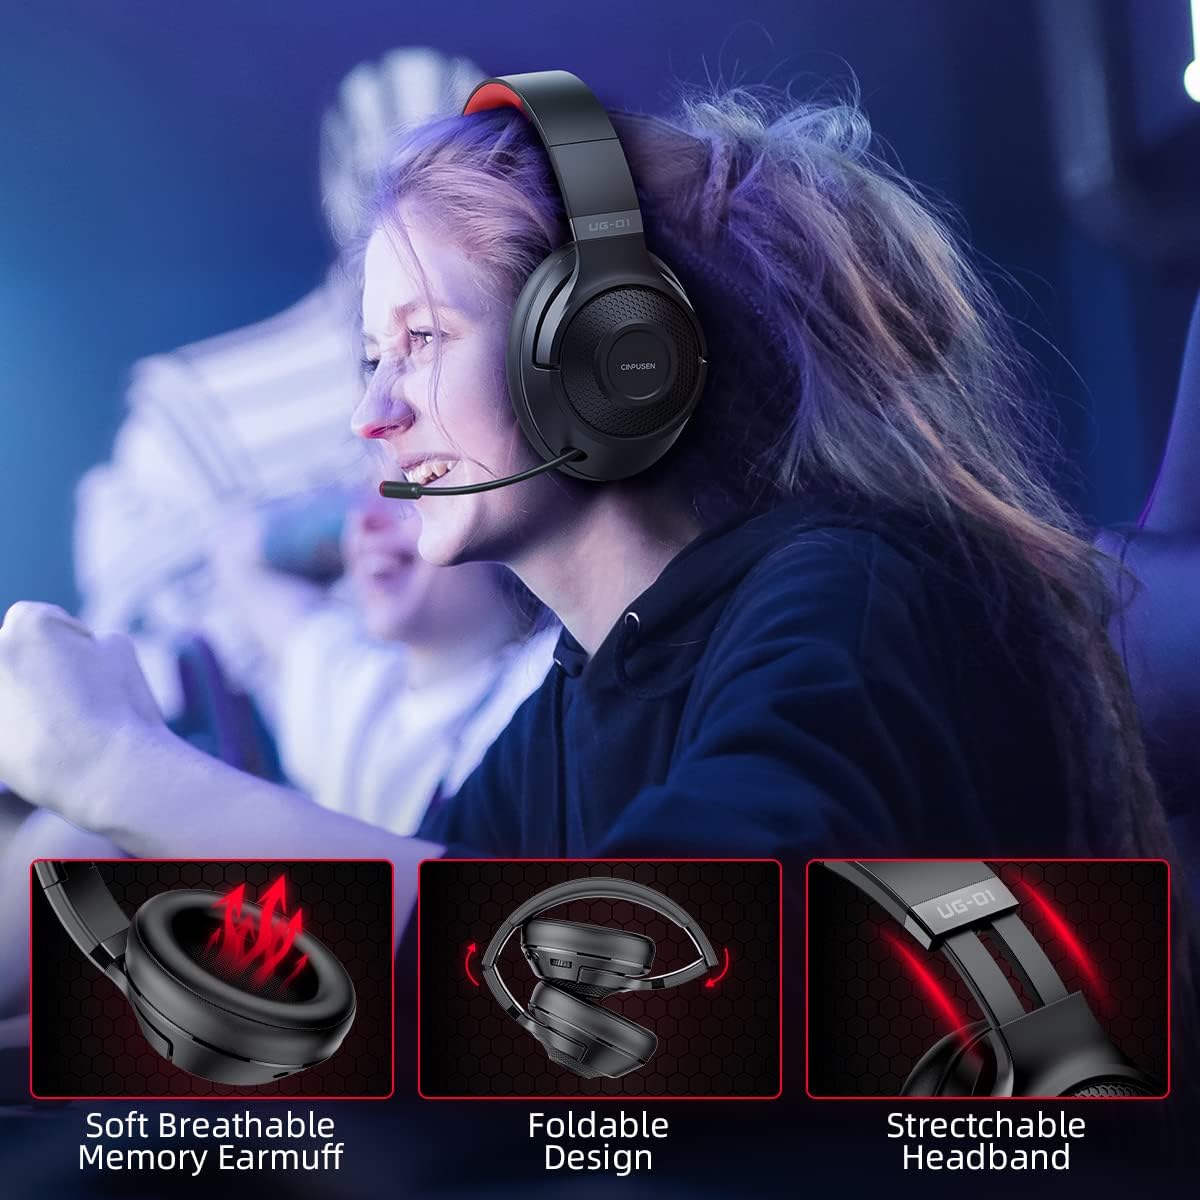 Auriculares inalámbricos Bluetooth con micrófono, auriculares para juegos  ps4 para PC, Xbox One, Ps5